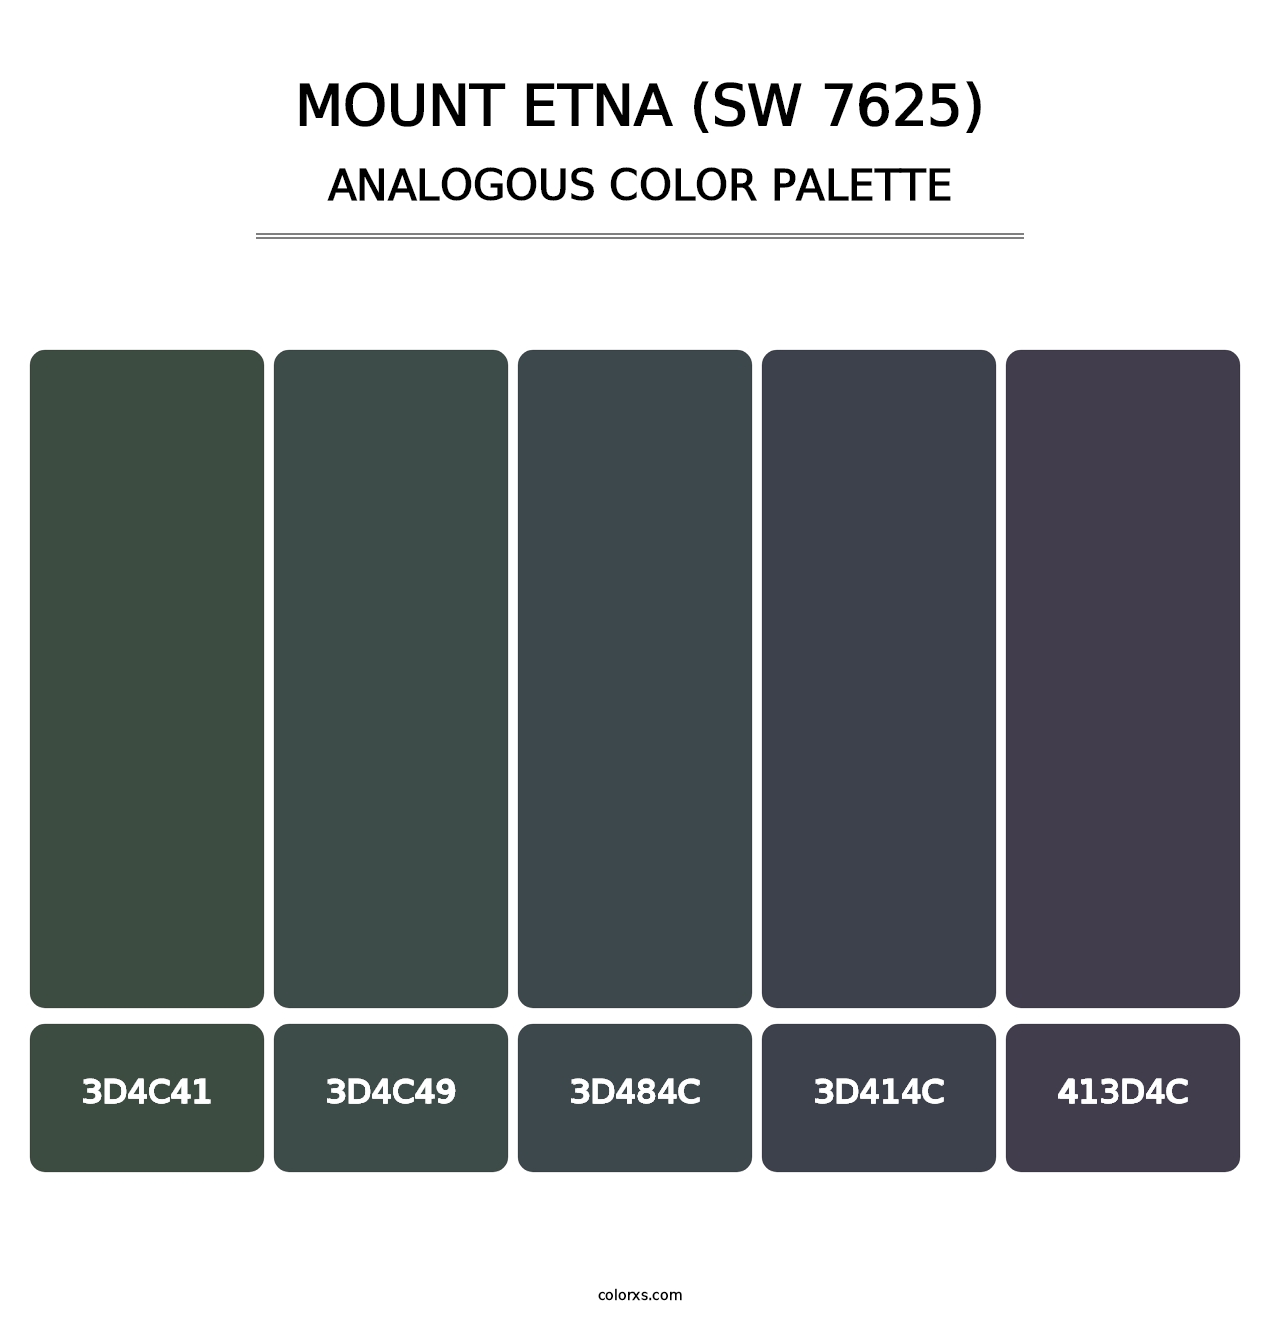 Mount Etna (SW 7625) - Analogous Color Palette